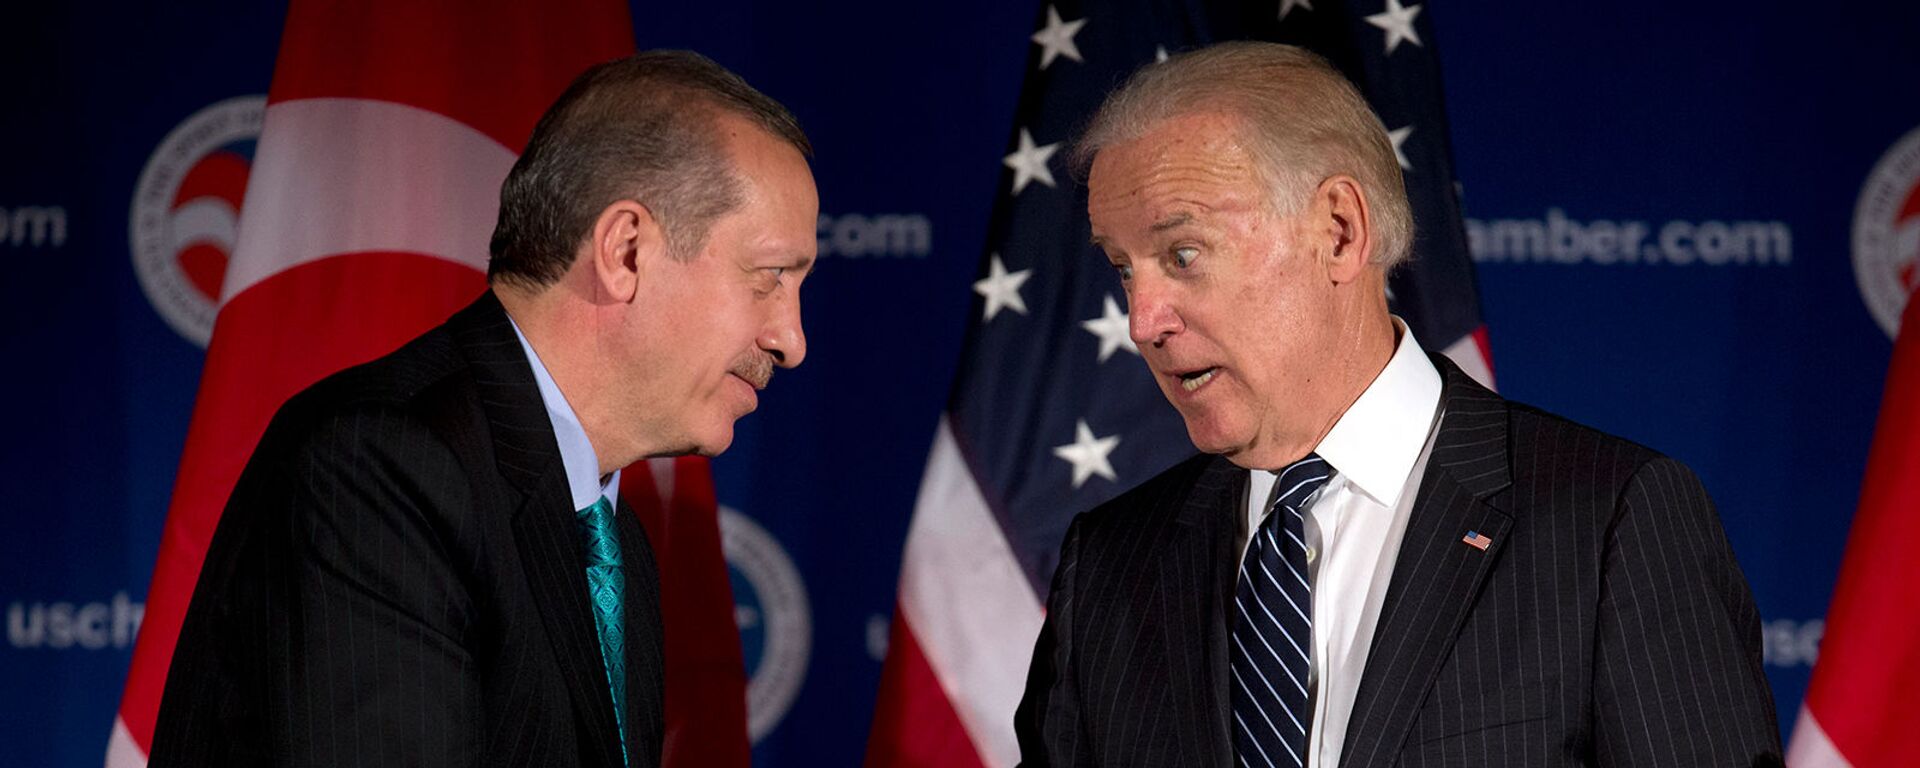 Вице-президент США Джо Байден и премьер-министр Турции Реджеп Тайип Эрдоган приветствуют друг друга во время круглого стола, организованного Торговой палатой США (16 мая 2013). Вашингтон - Sputnik Արմենիա, 1920, 26.04.2021